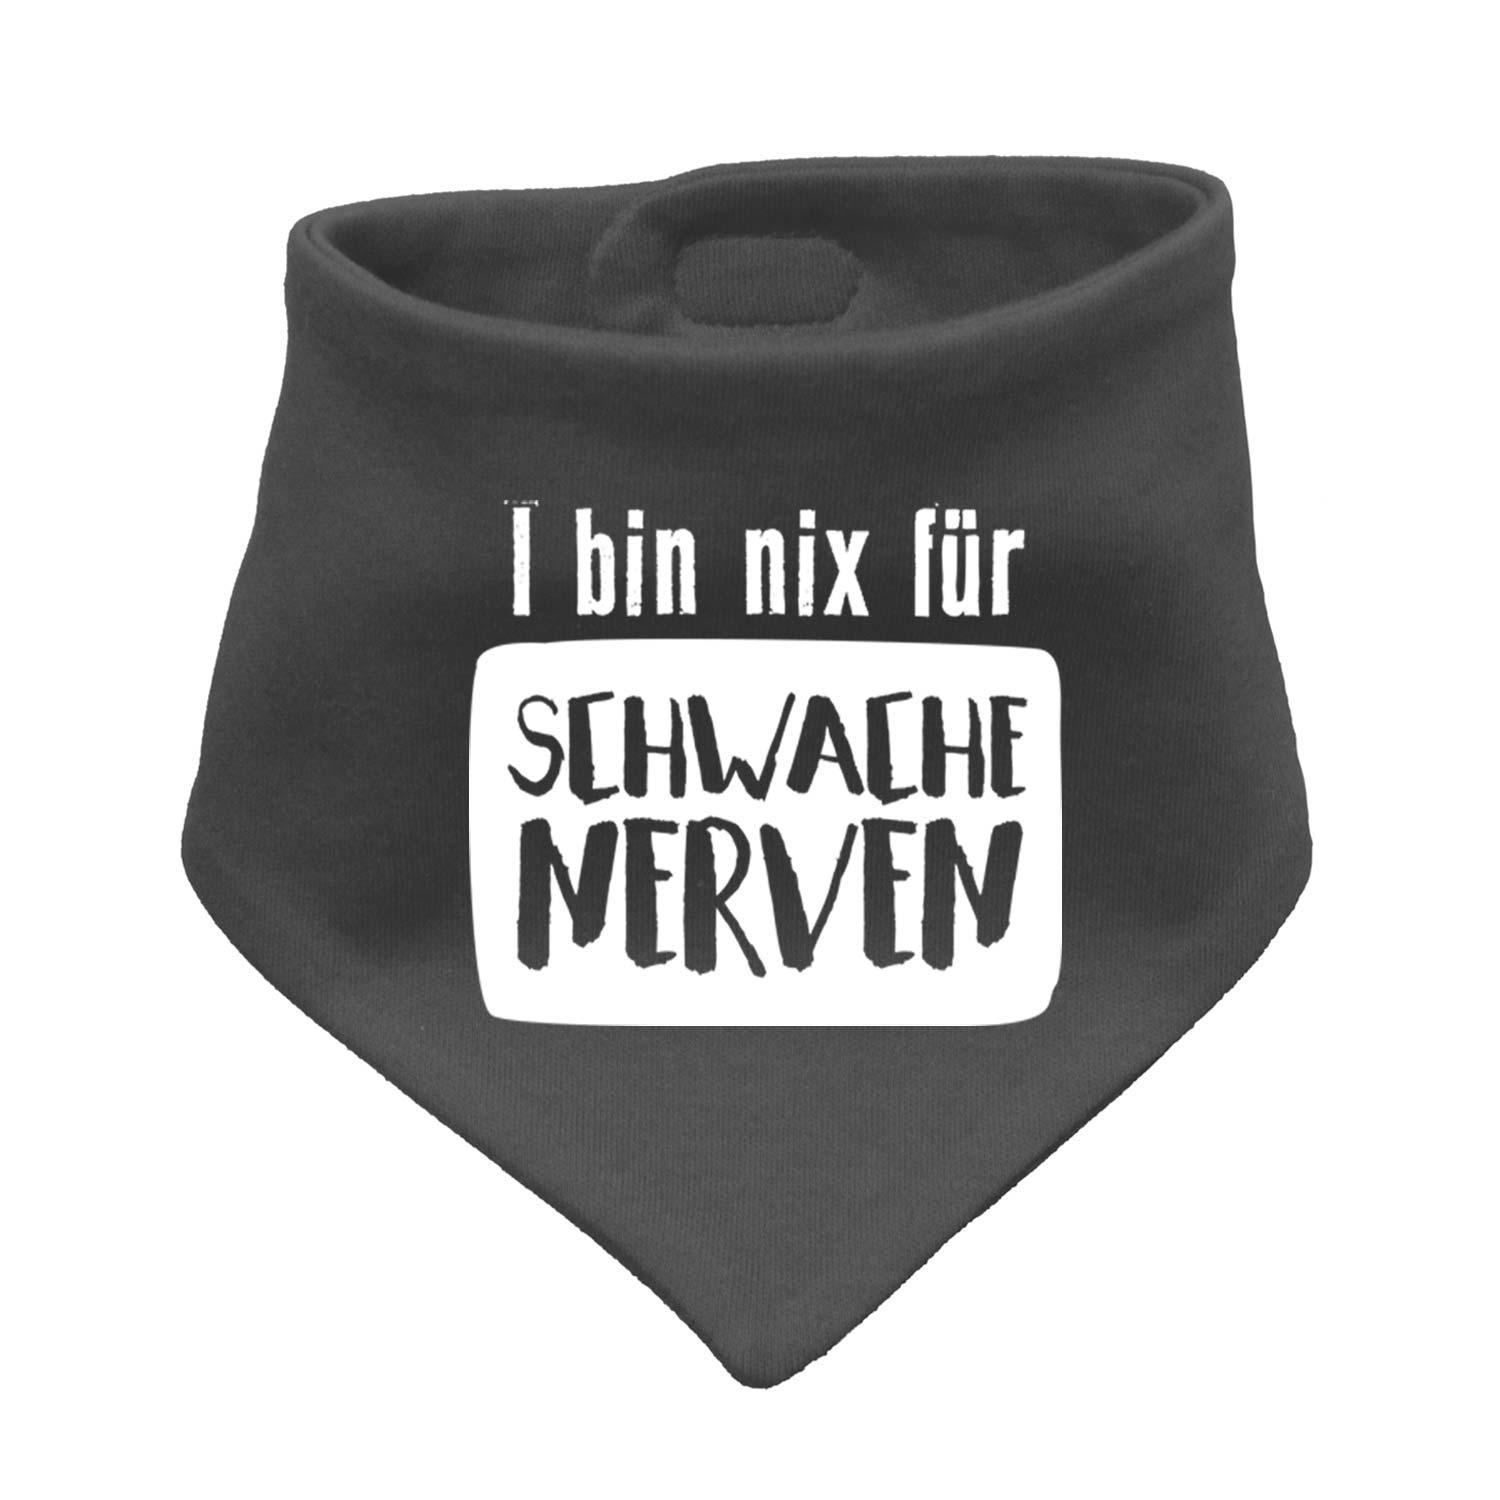 Babyhalstuch "nix für schwache Nerven" - bavariashop - mei LebensGfui